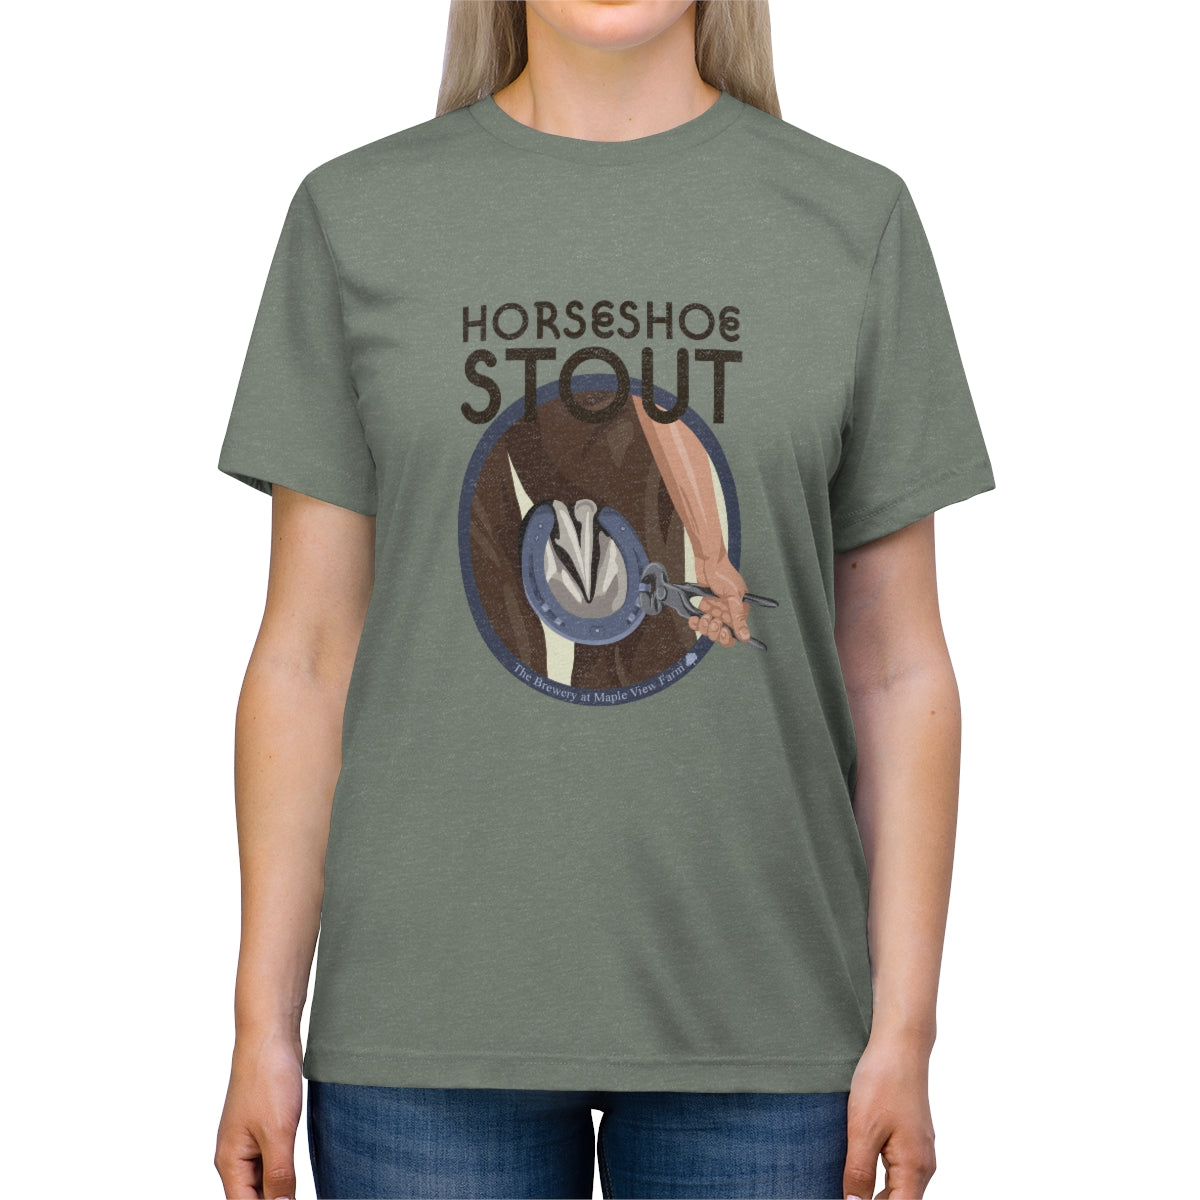 Horseshoe Stout